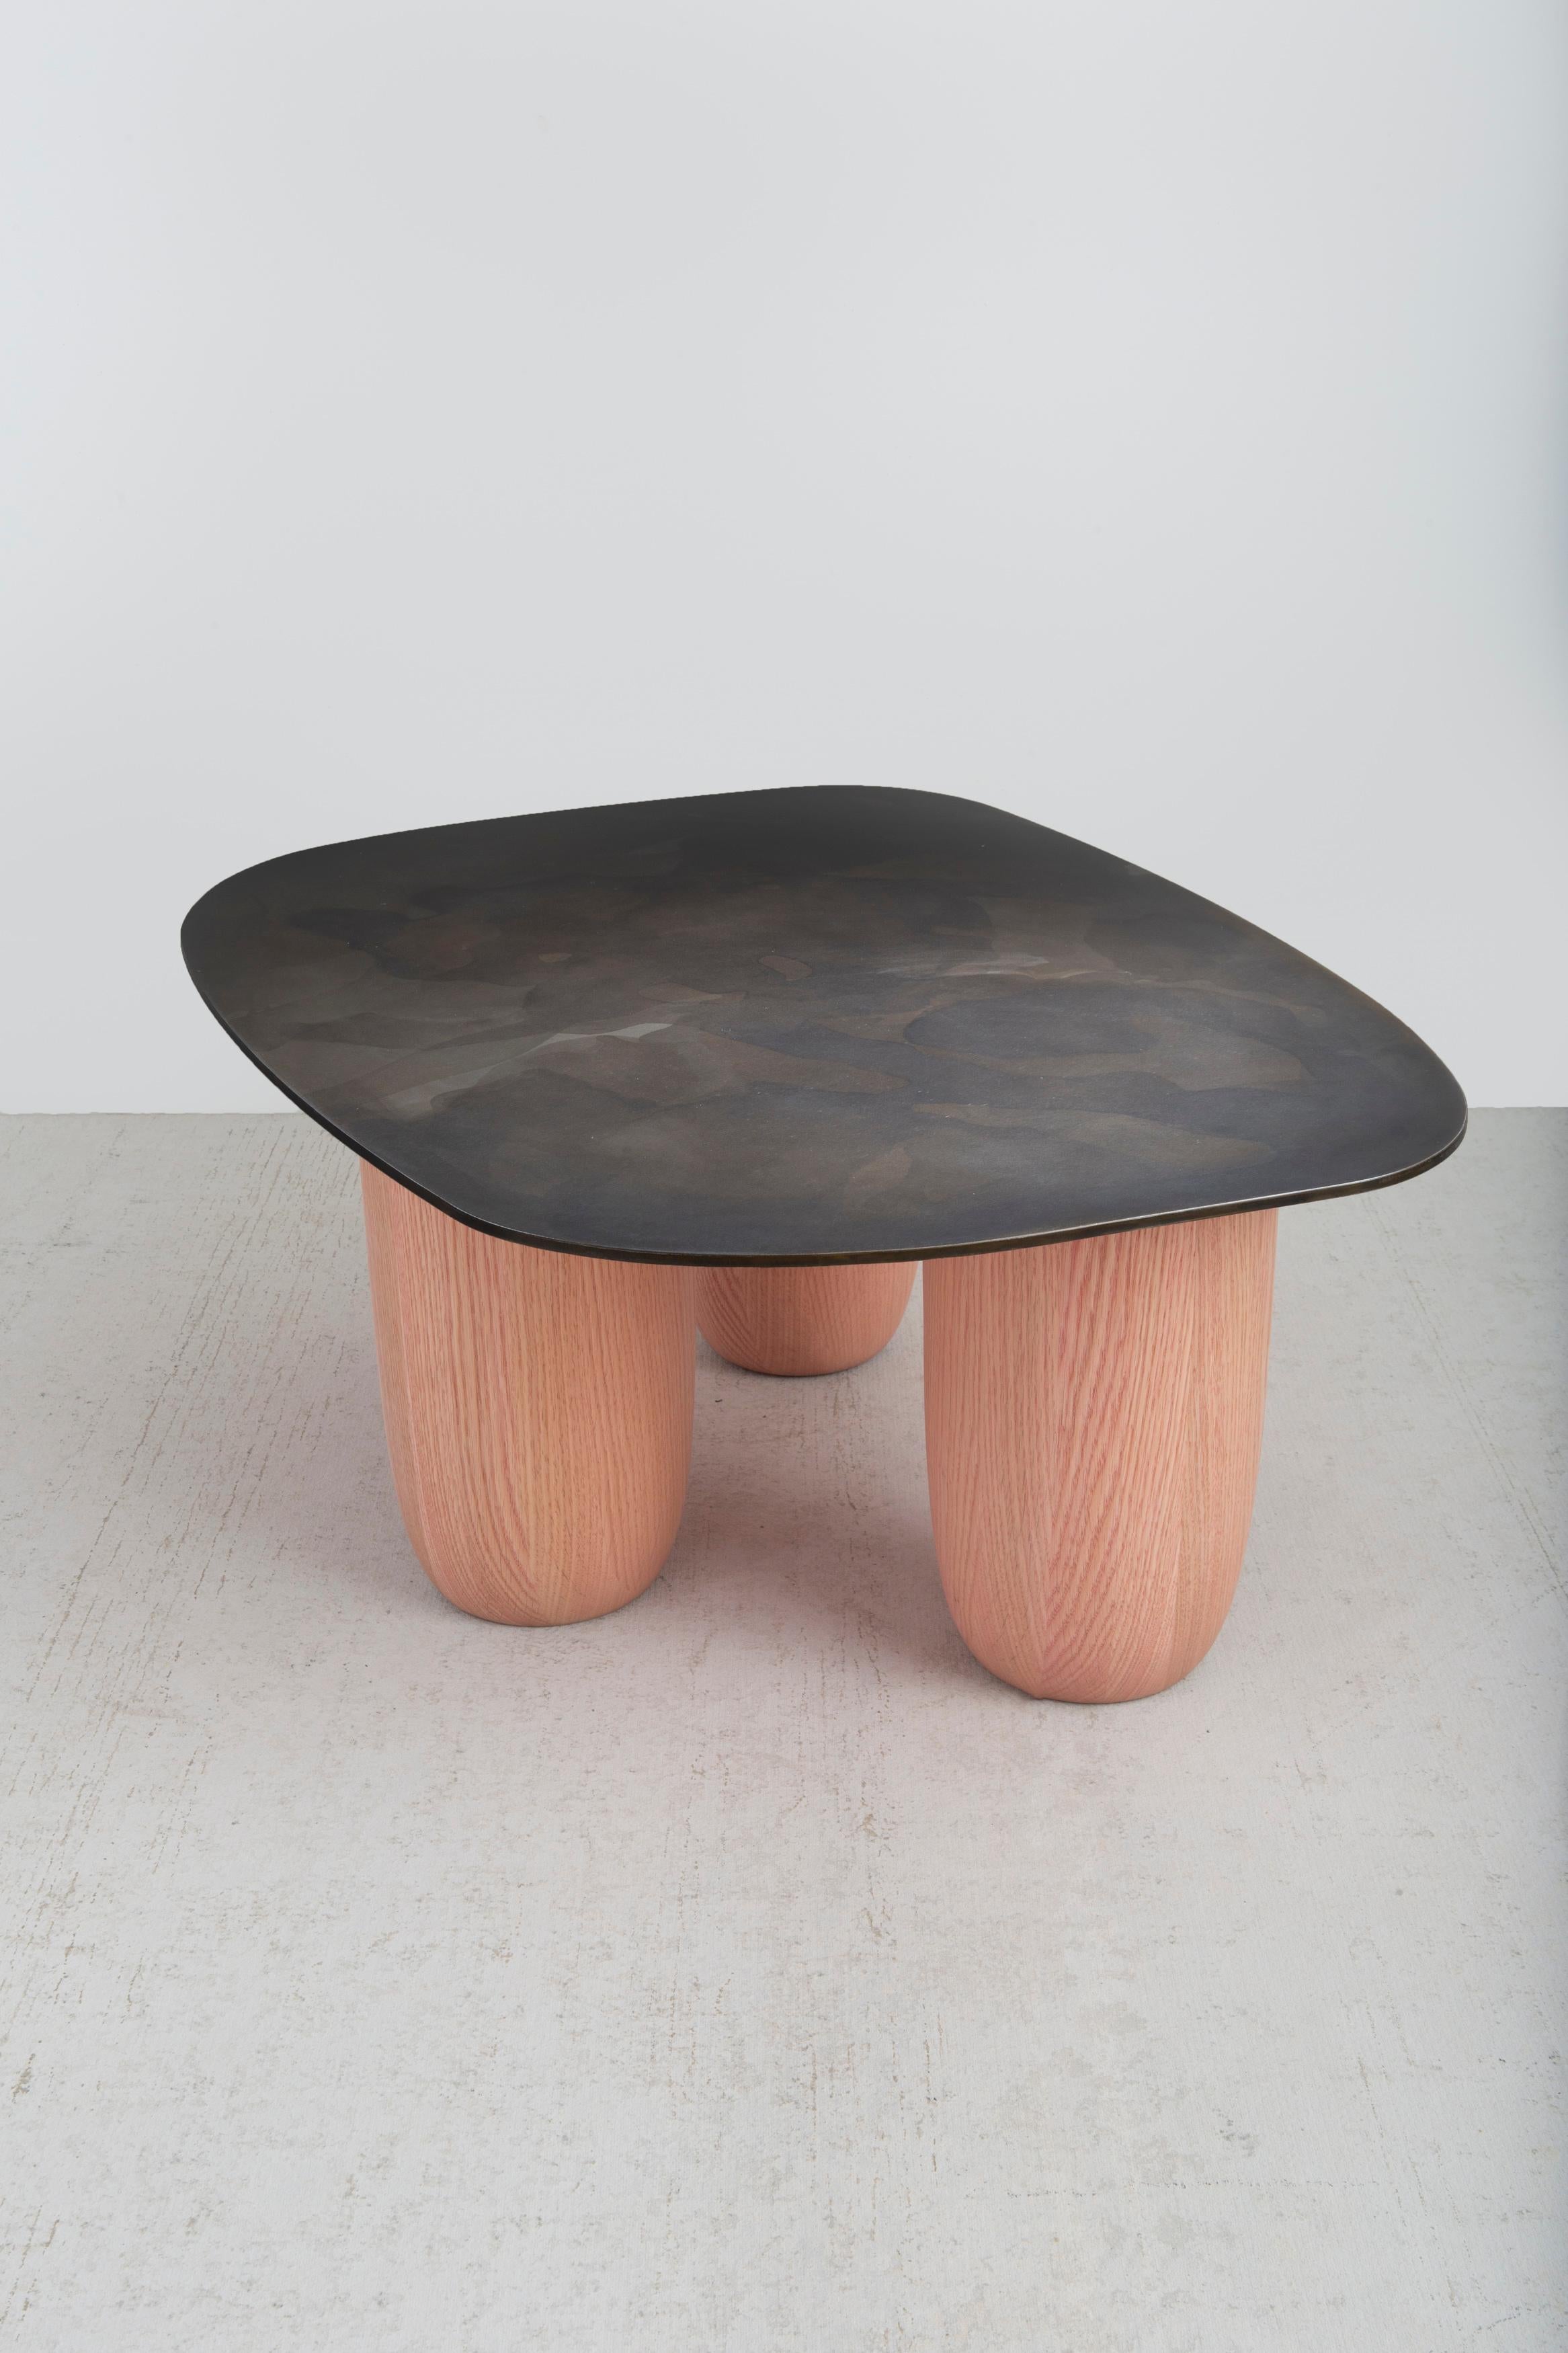 Nos chaleureuses tables basses contemporaines Sumo ont été présentées à Design Miami 2020. Ce design a été influencé par l'esthétique minimaliste japonaise et très inspiré par le maître vénéré Isamu Noguchi. Les qualités du design ressemblent à une